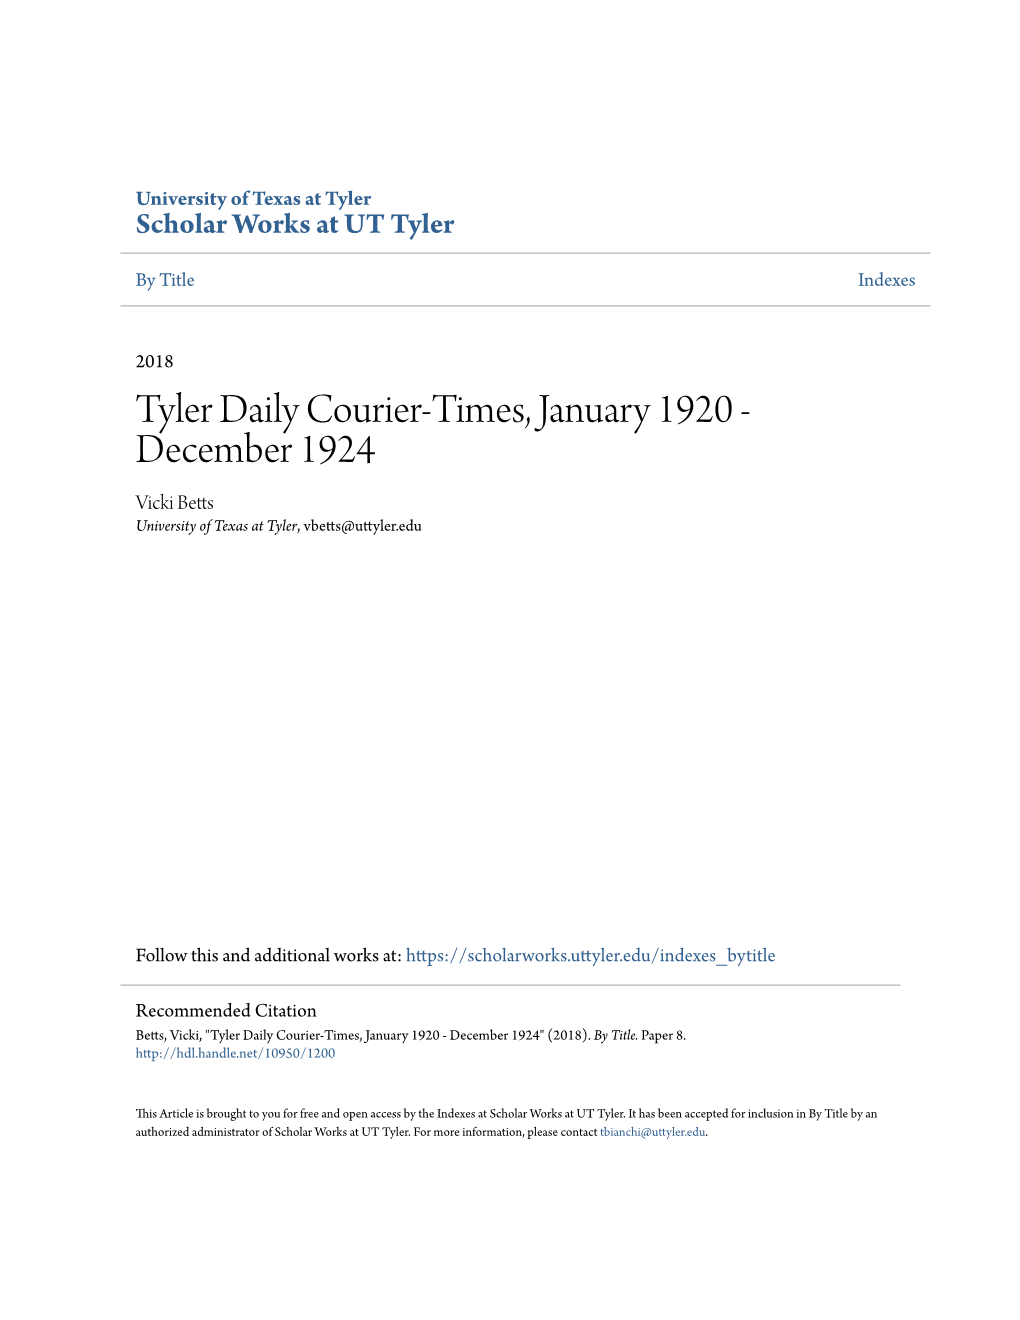 Tyler Daily Courier-Times, January 1920 - December 1924 Vicki Betts University of Texas at Tyler, Vbetts@Uttyler.Edu